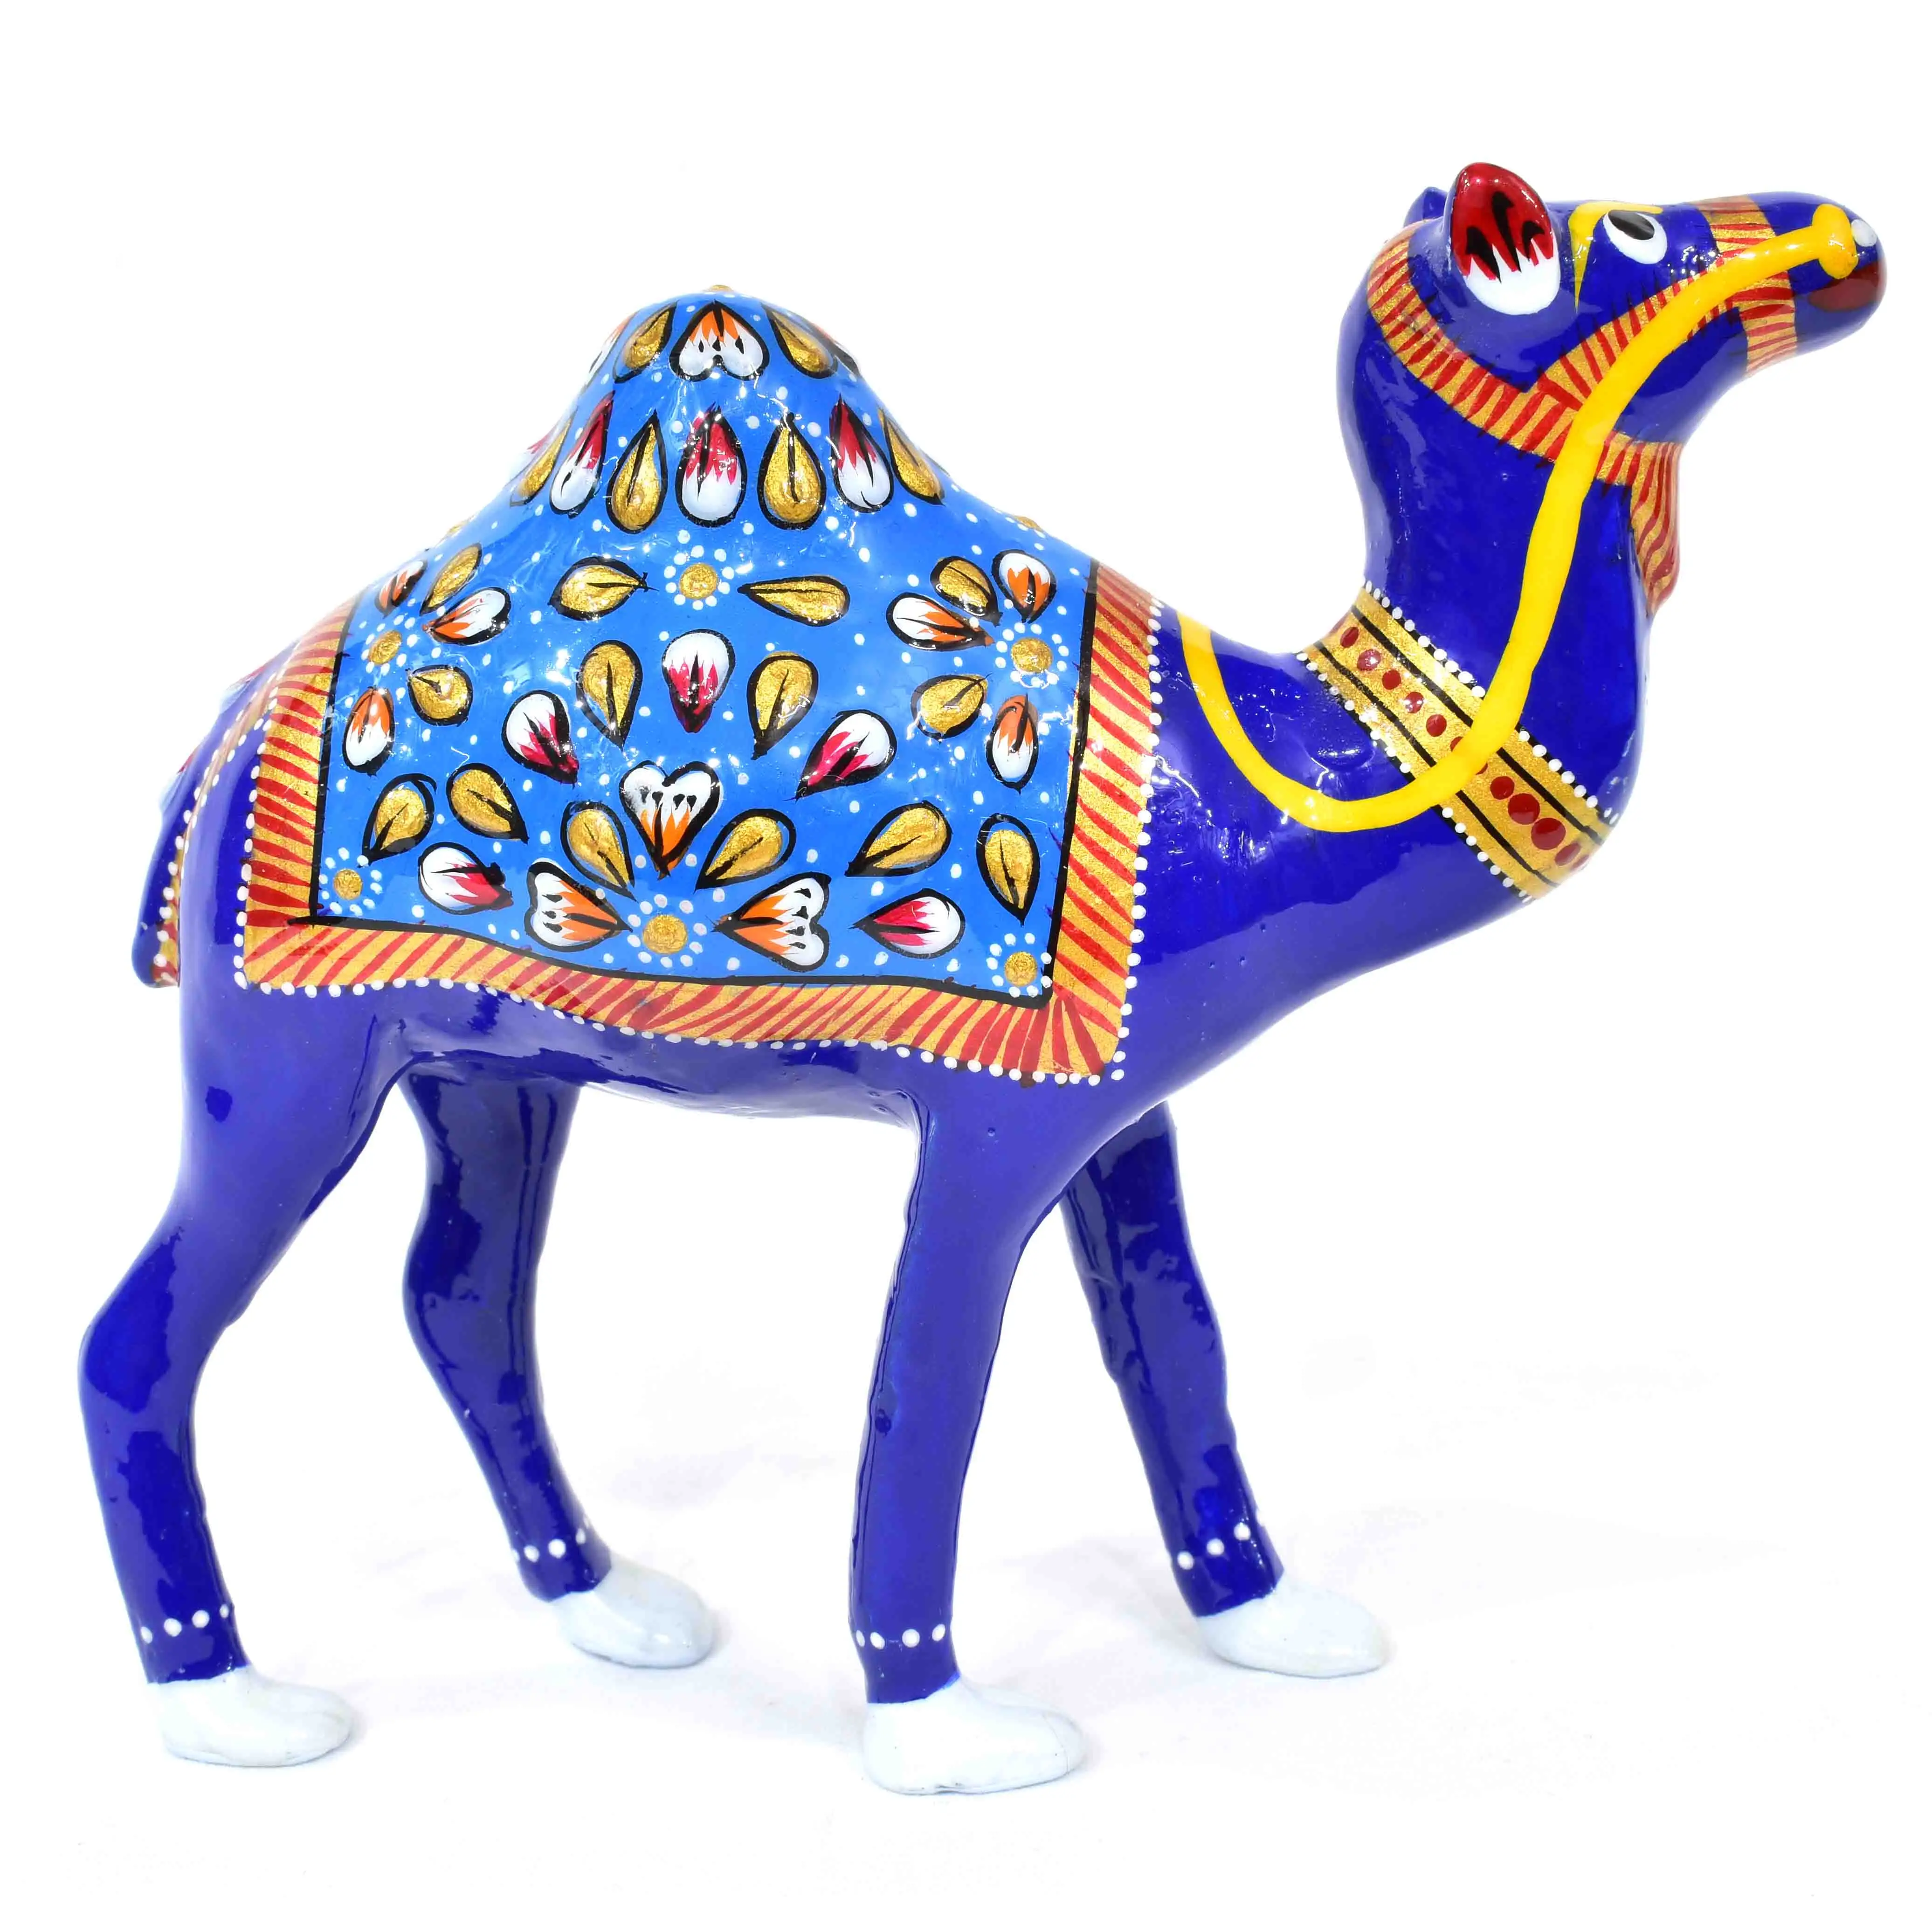 Metall handwerk Maßge schneiderte Aluminium Metall gemalte Kamels tatue Tiers tatue in blauer Farbe für Heim-und Büro dekoration